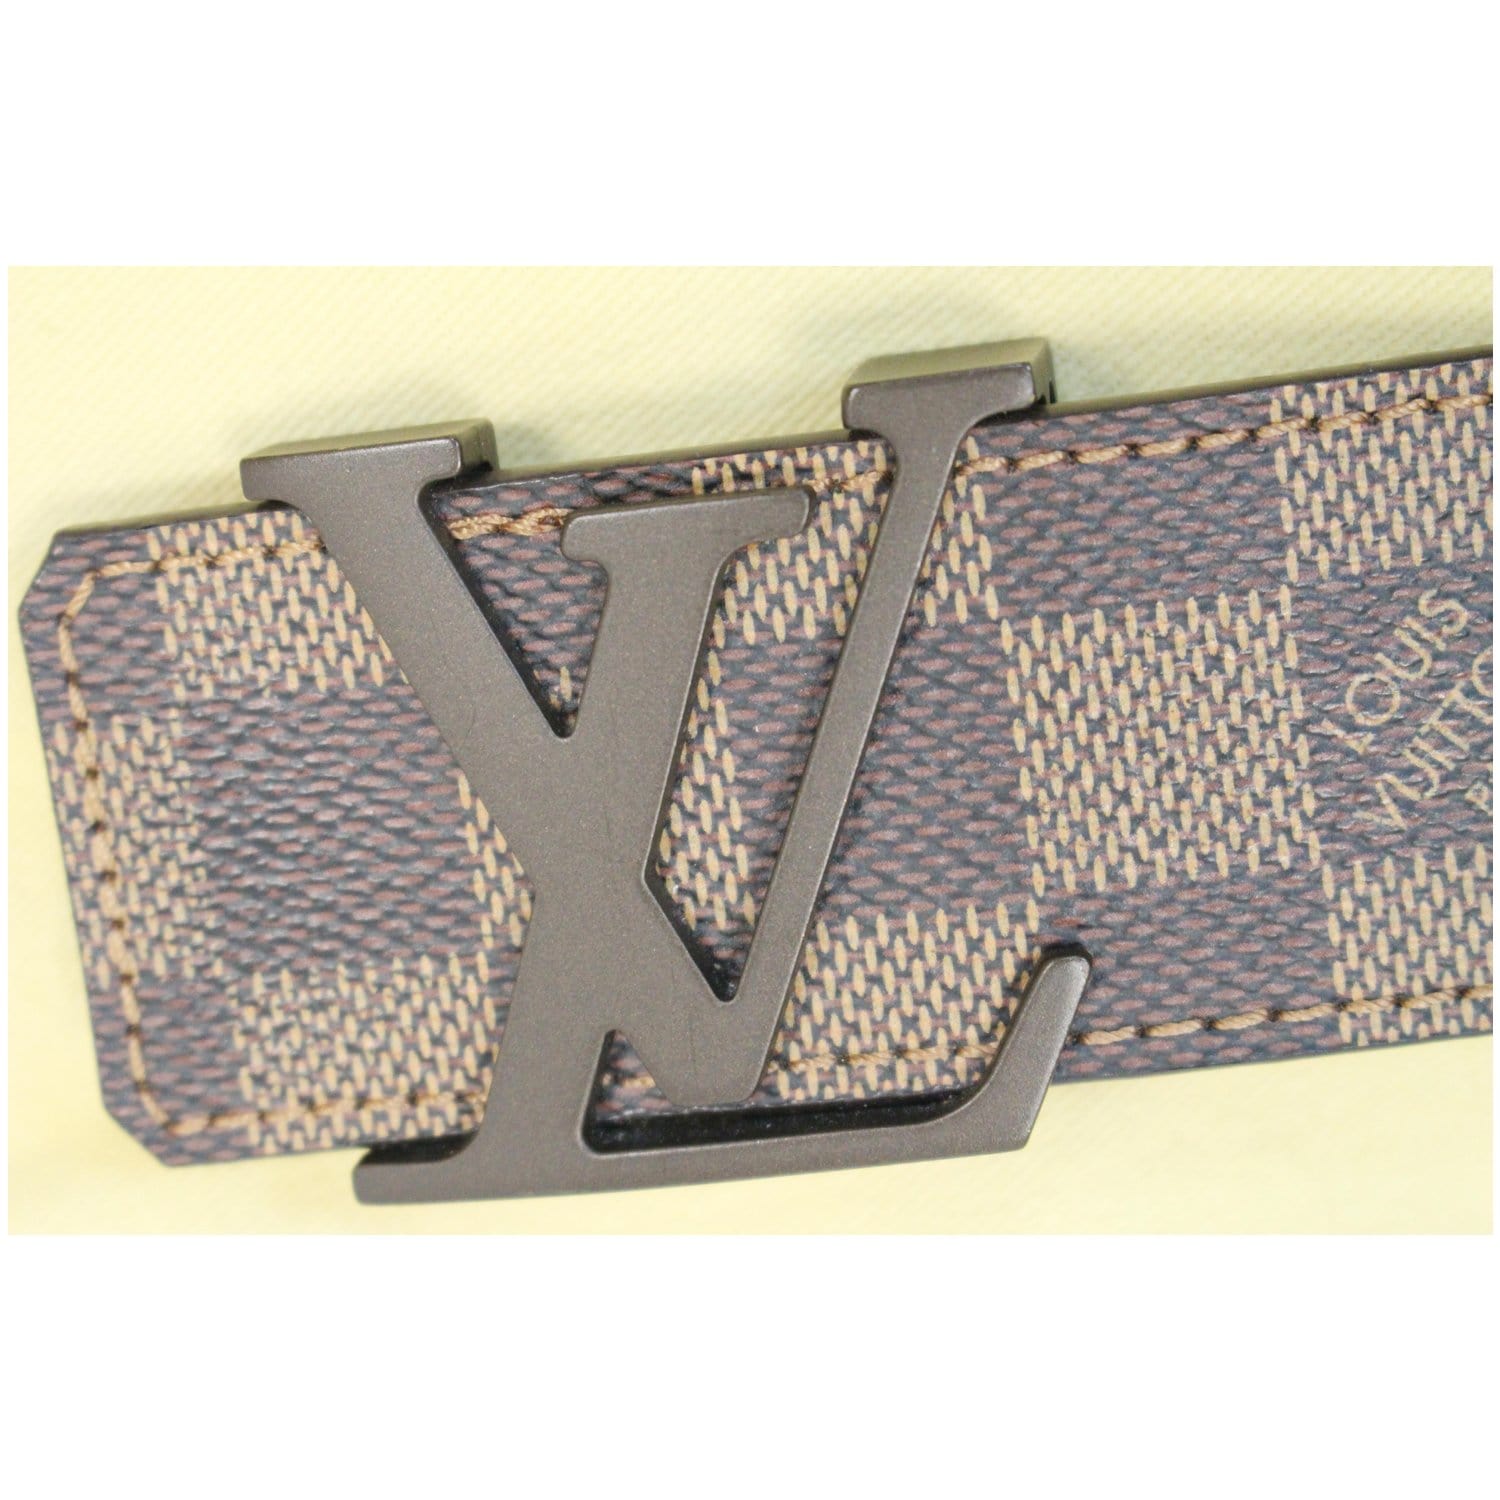 Louis Vuitton leather wallets  Louis vuitton mens wallet, Wallet, Mens  belts fashion